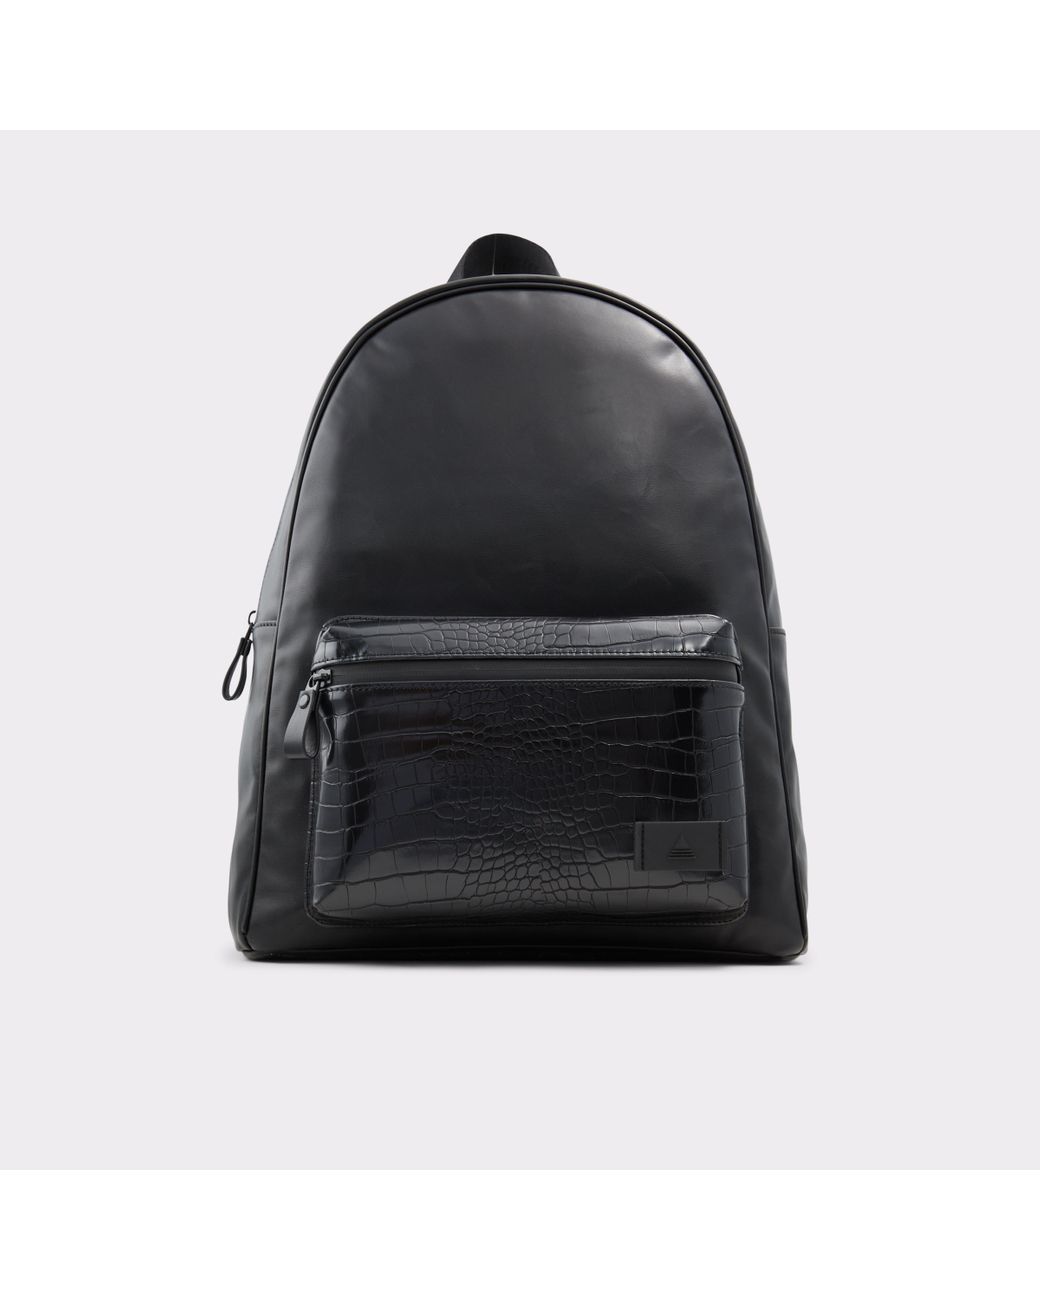 Stunning Felt Bags for Men | Aldo Collection